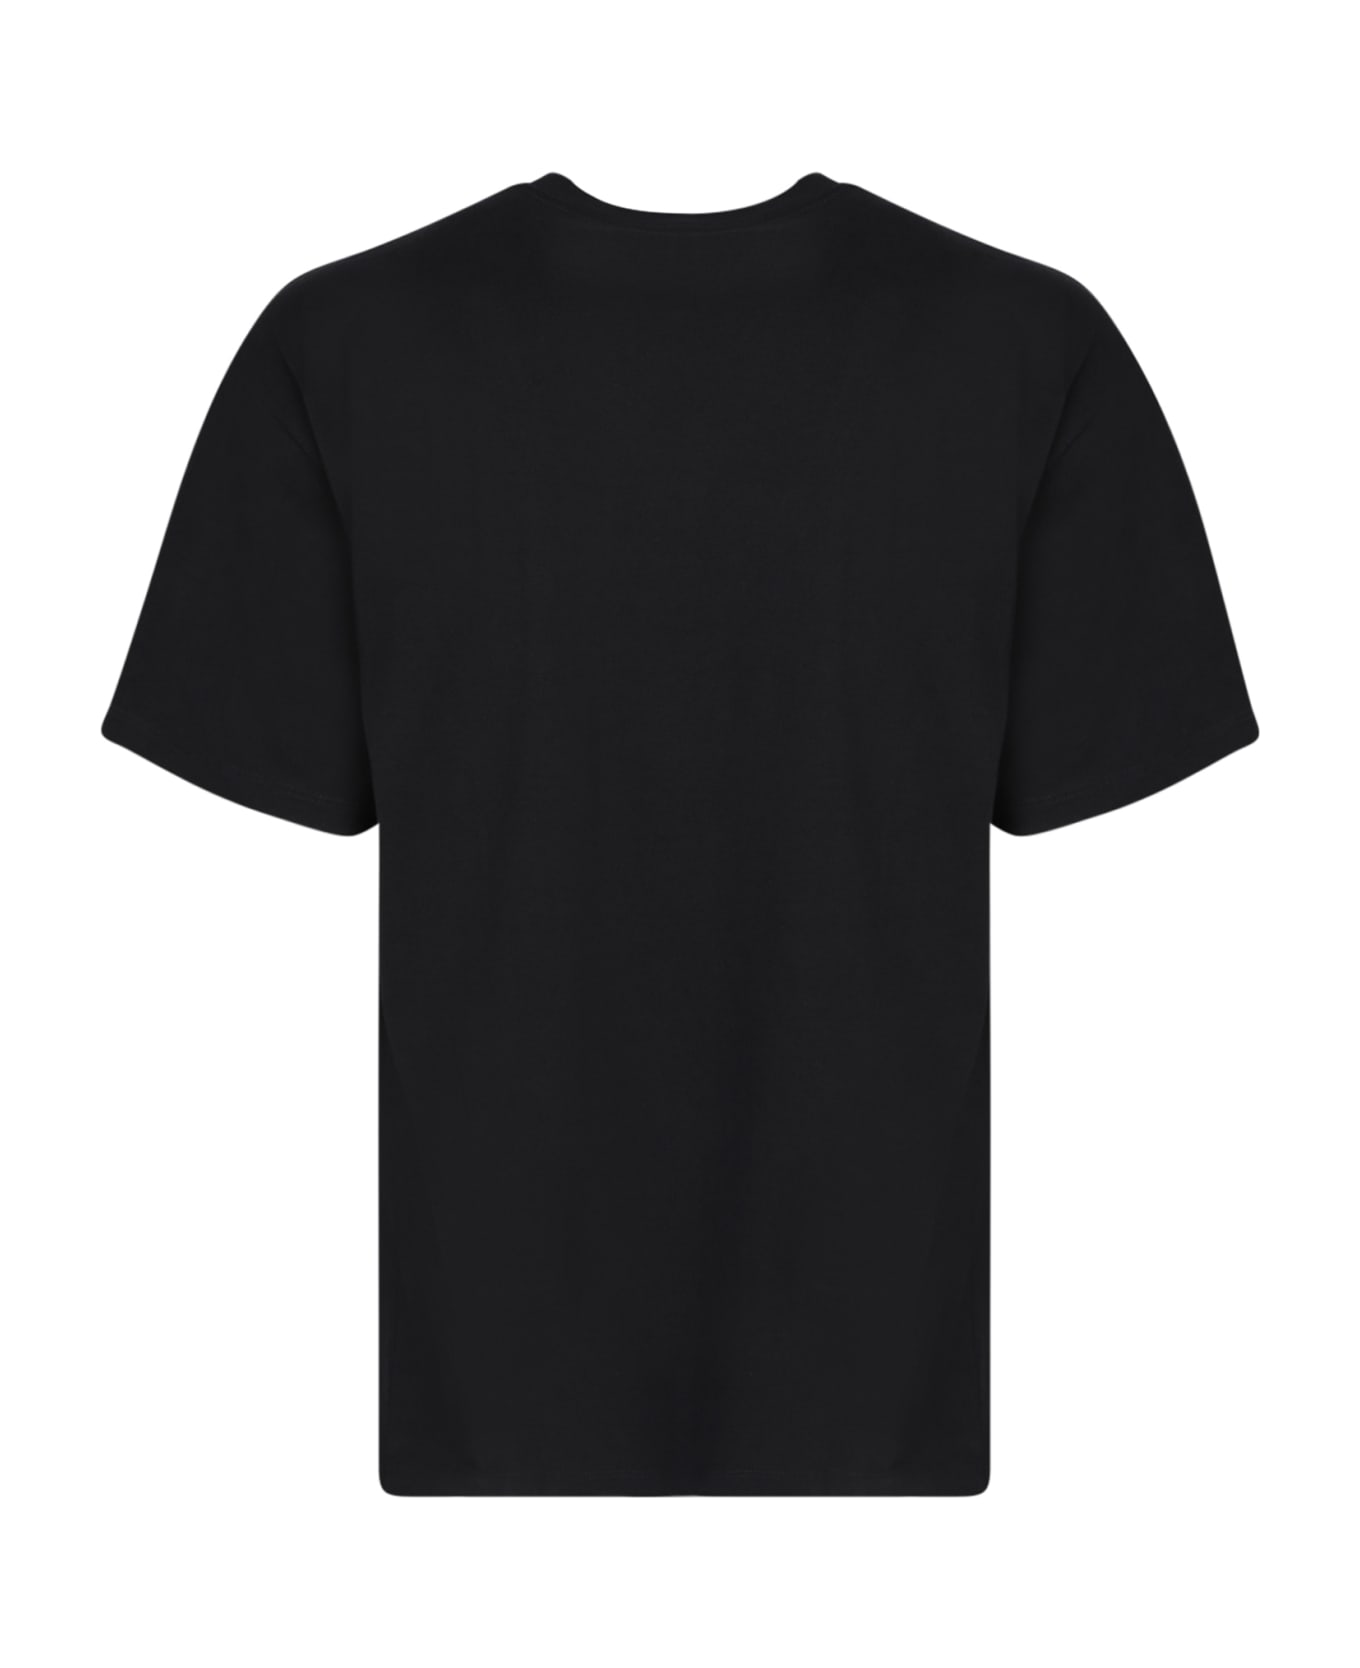 Aries No Problemo T-shirt Black - Black